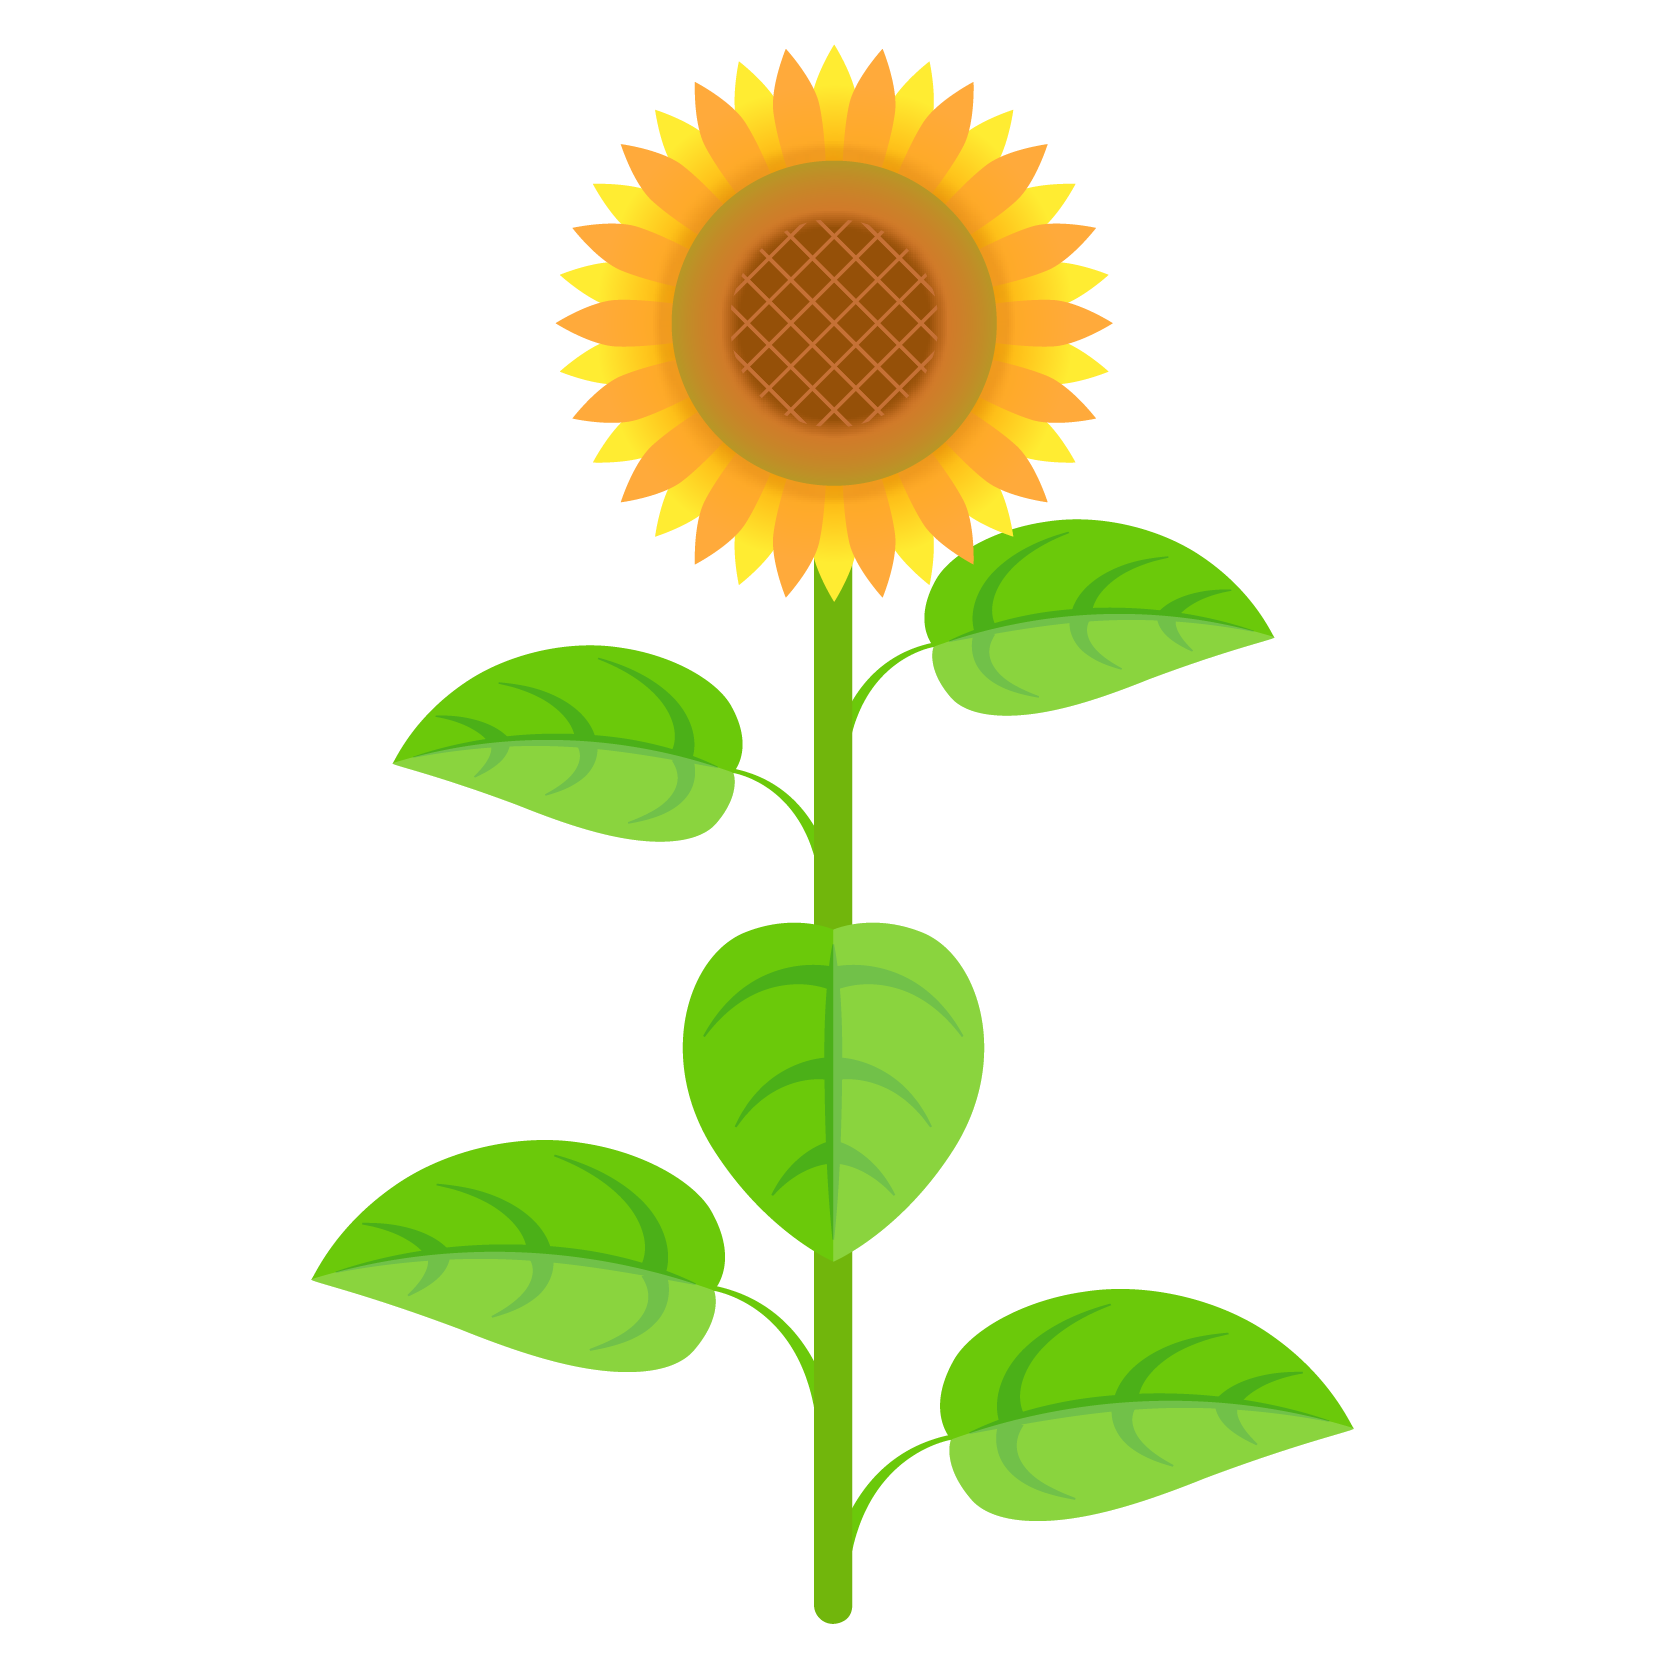 商用フリー 無料イラスト ひまわり 向日葵 のイラスト Sunflowerillustration001 商用ok フリー素材集 ナイスなイラスト